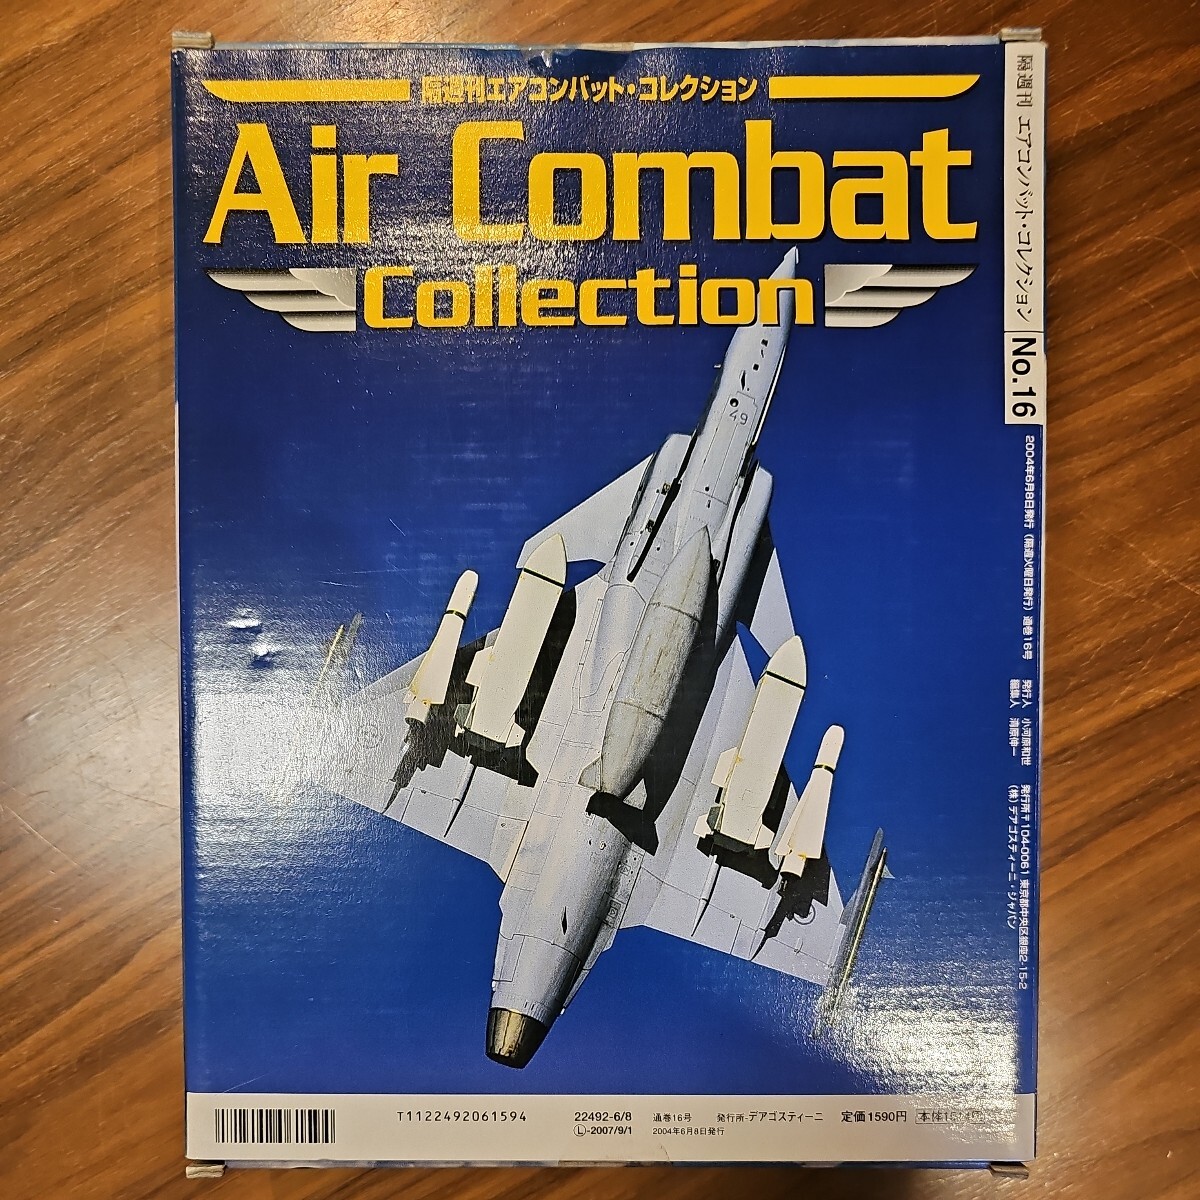 ノースアメリカン F-86 セイバー 隔週刊 エアコンバット・コレクション 16号 デアゴスティーニ_画像3